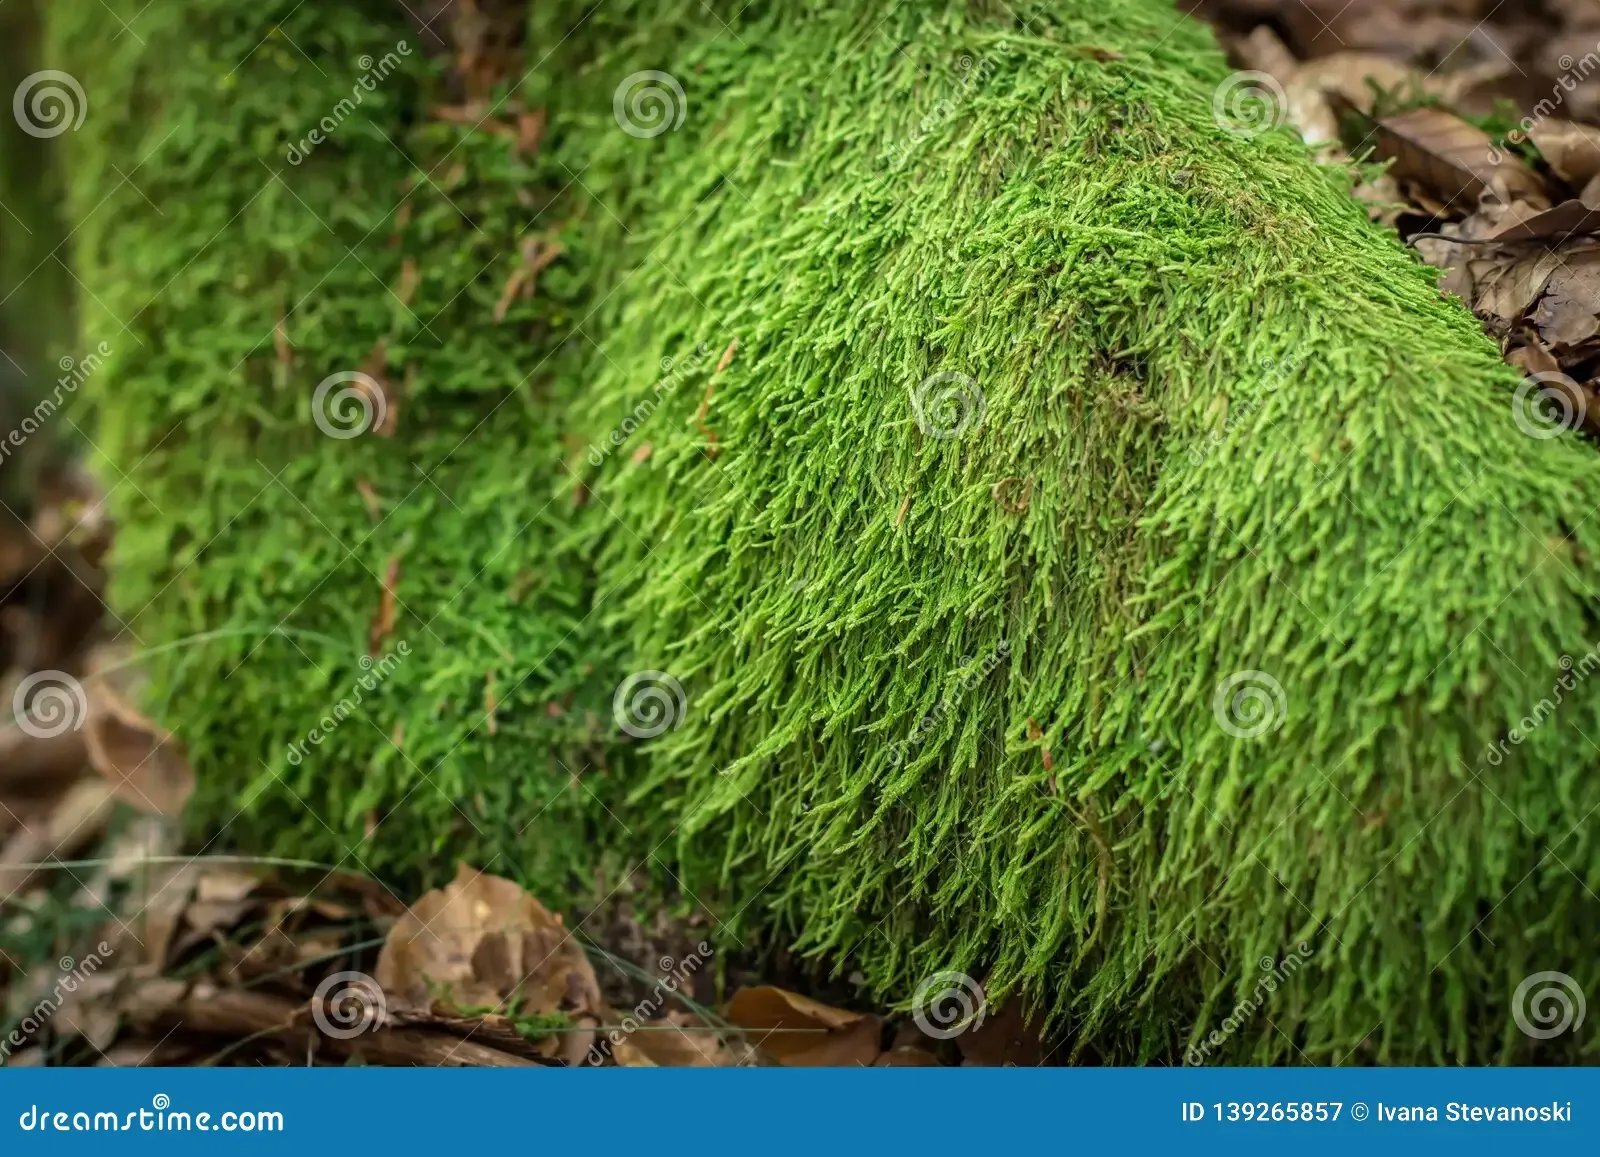 moss-hypnum-andoi-rock-beech-forest-tara-mountain-serbia-moss-hypnum-andoi-rock-139265857.jpg